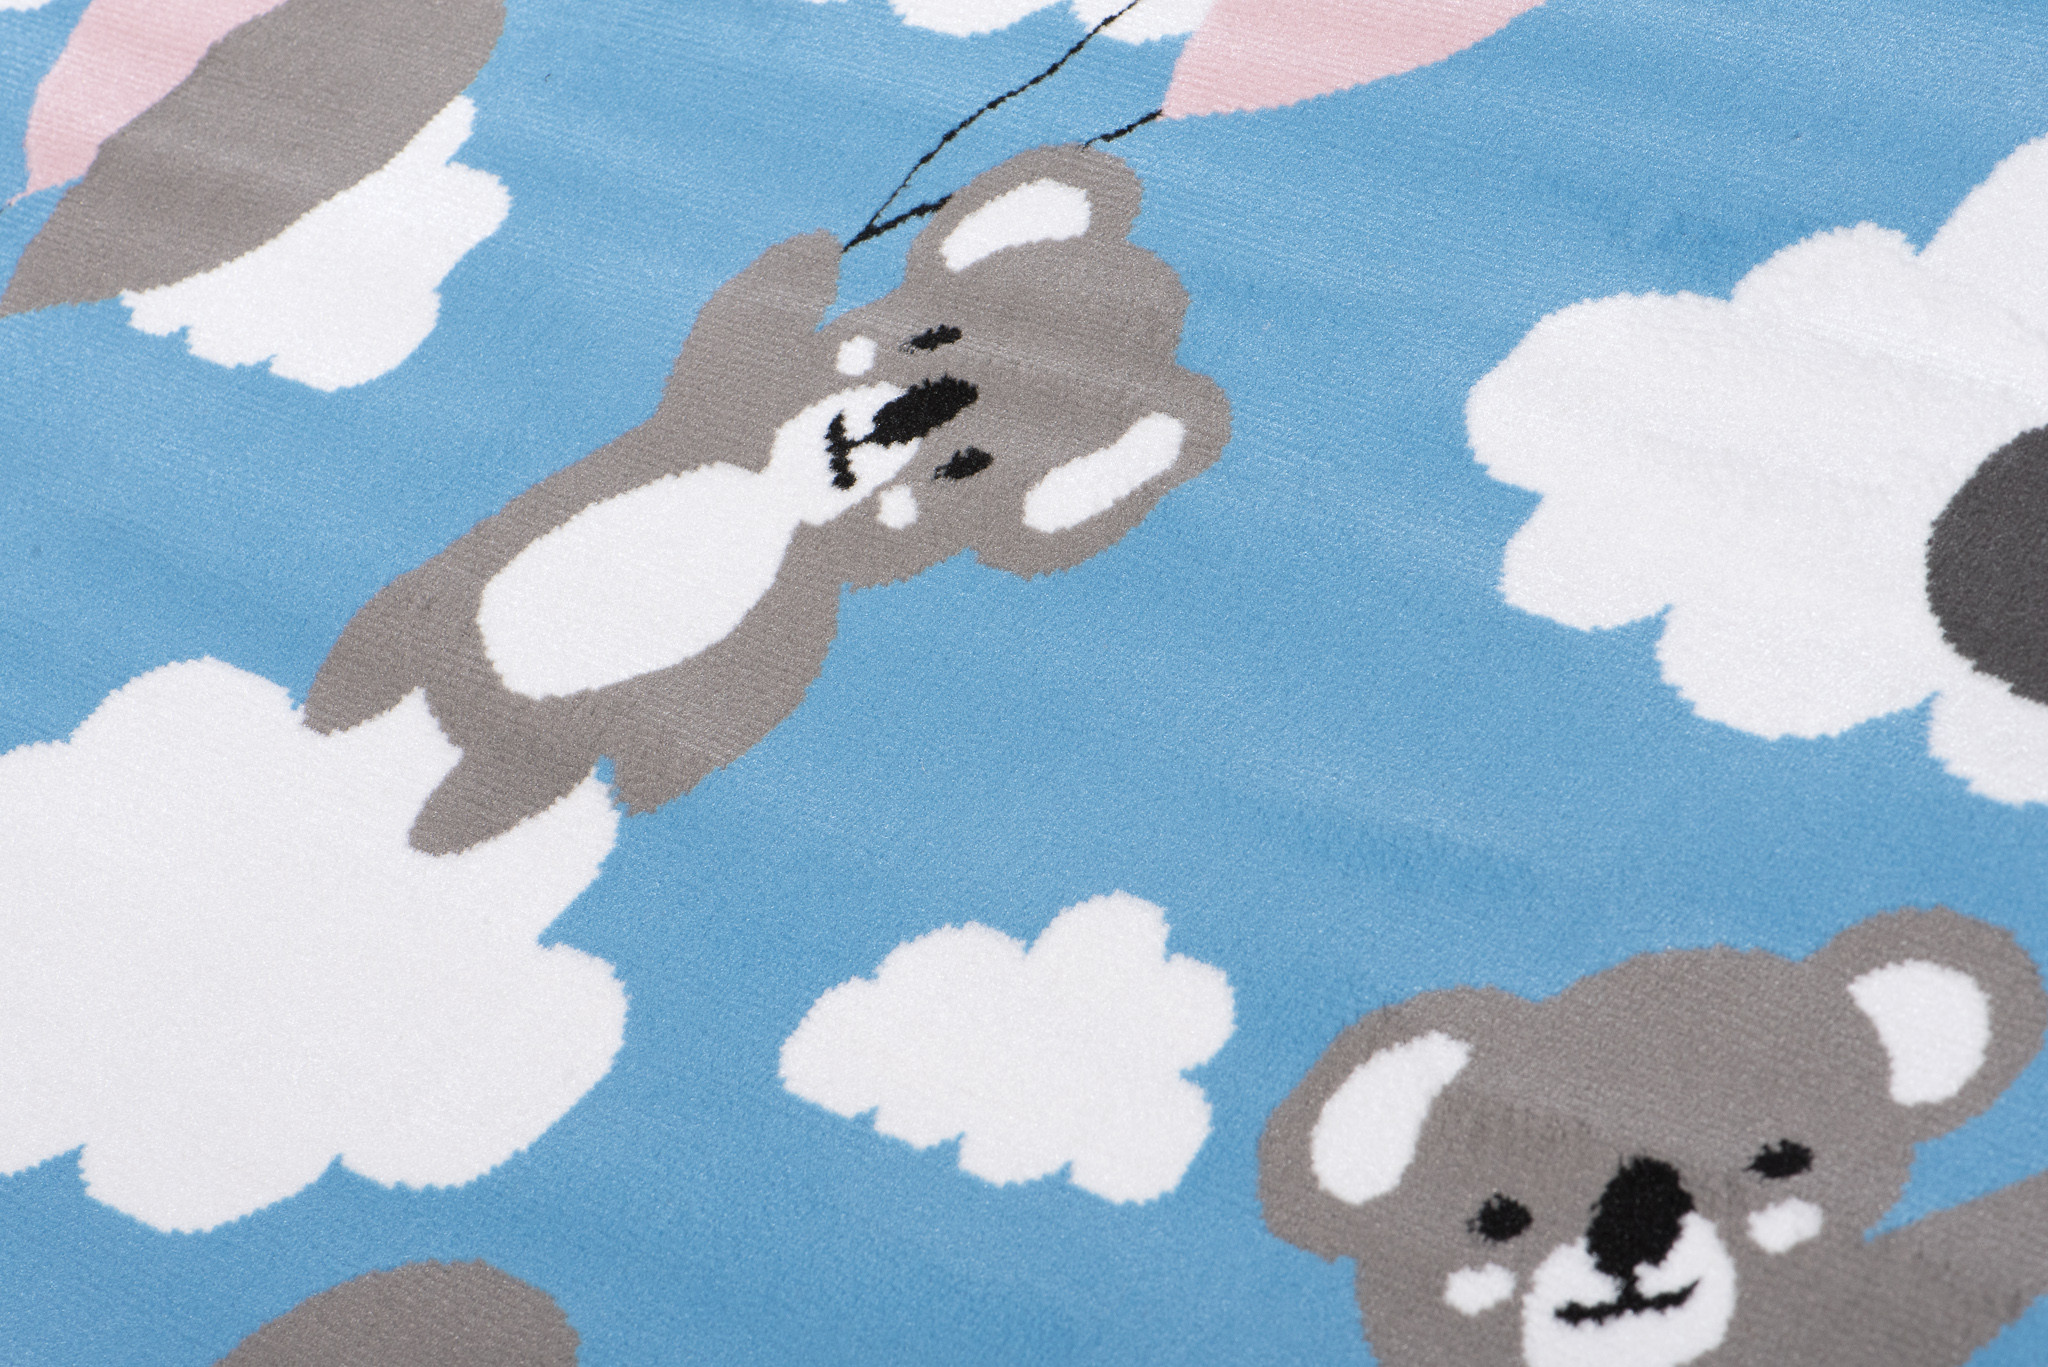 Dětský koberec PINKY DE79B Koala modrý